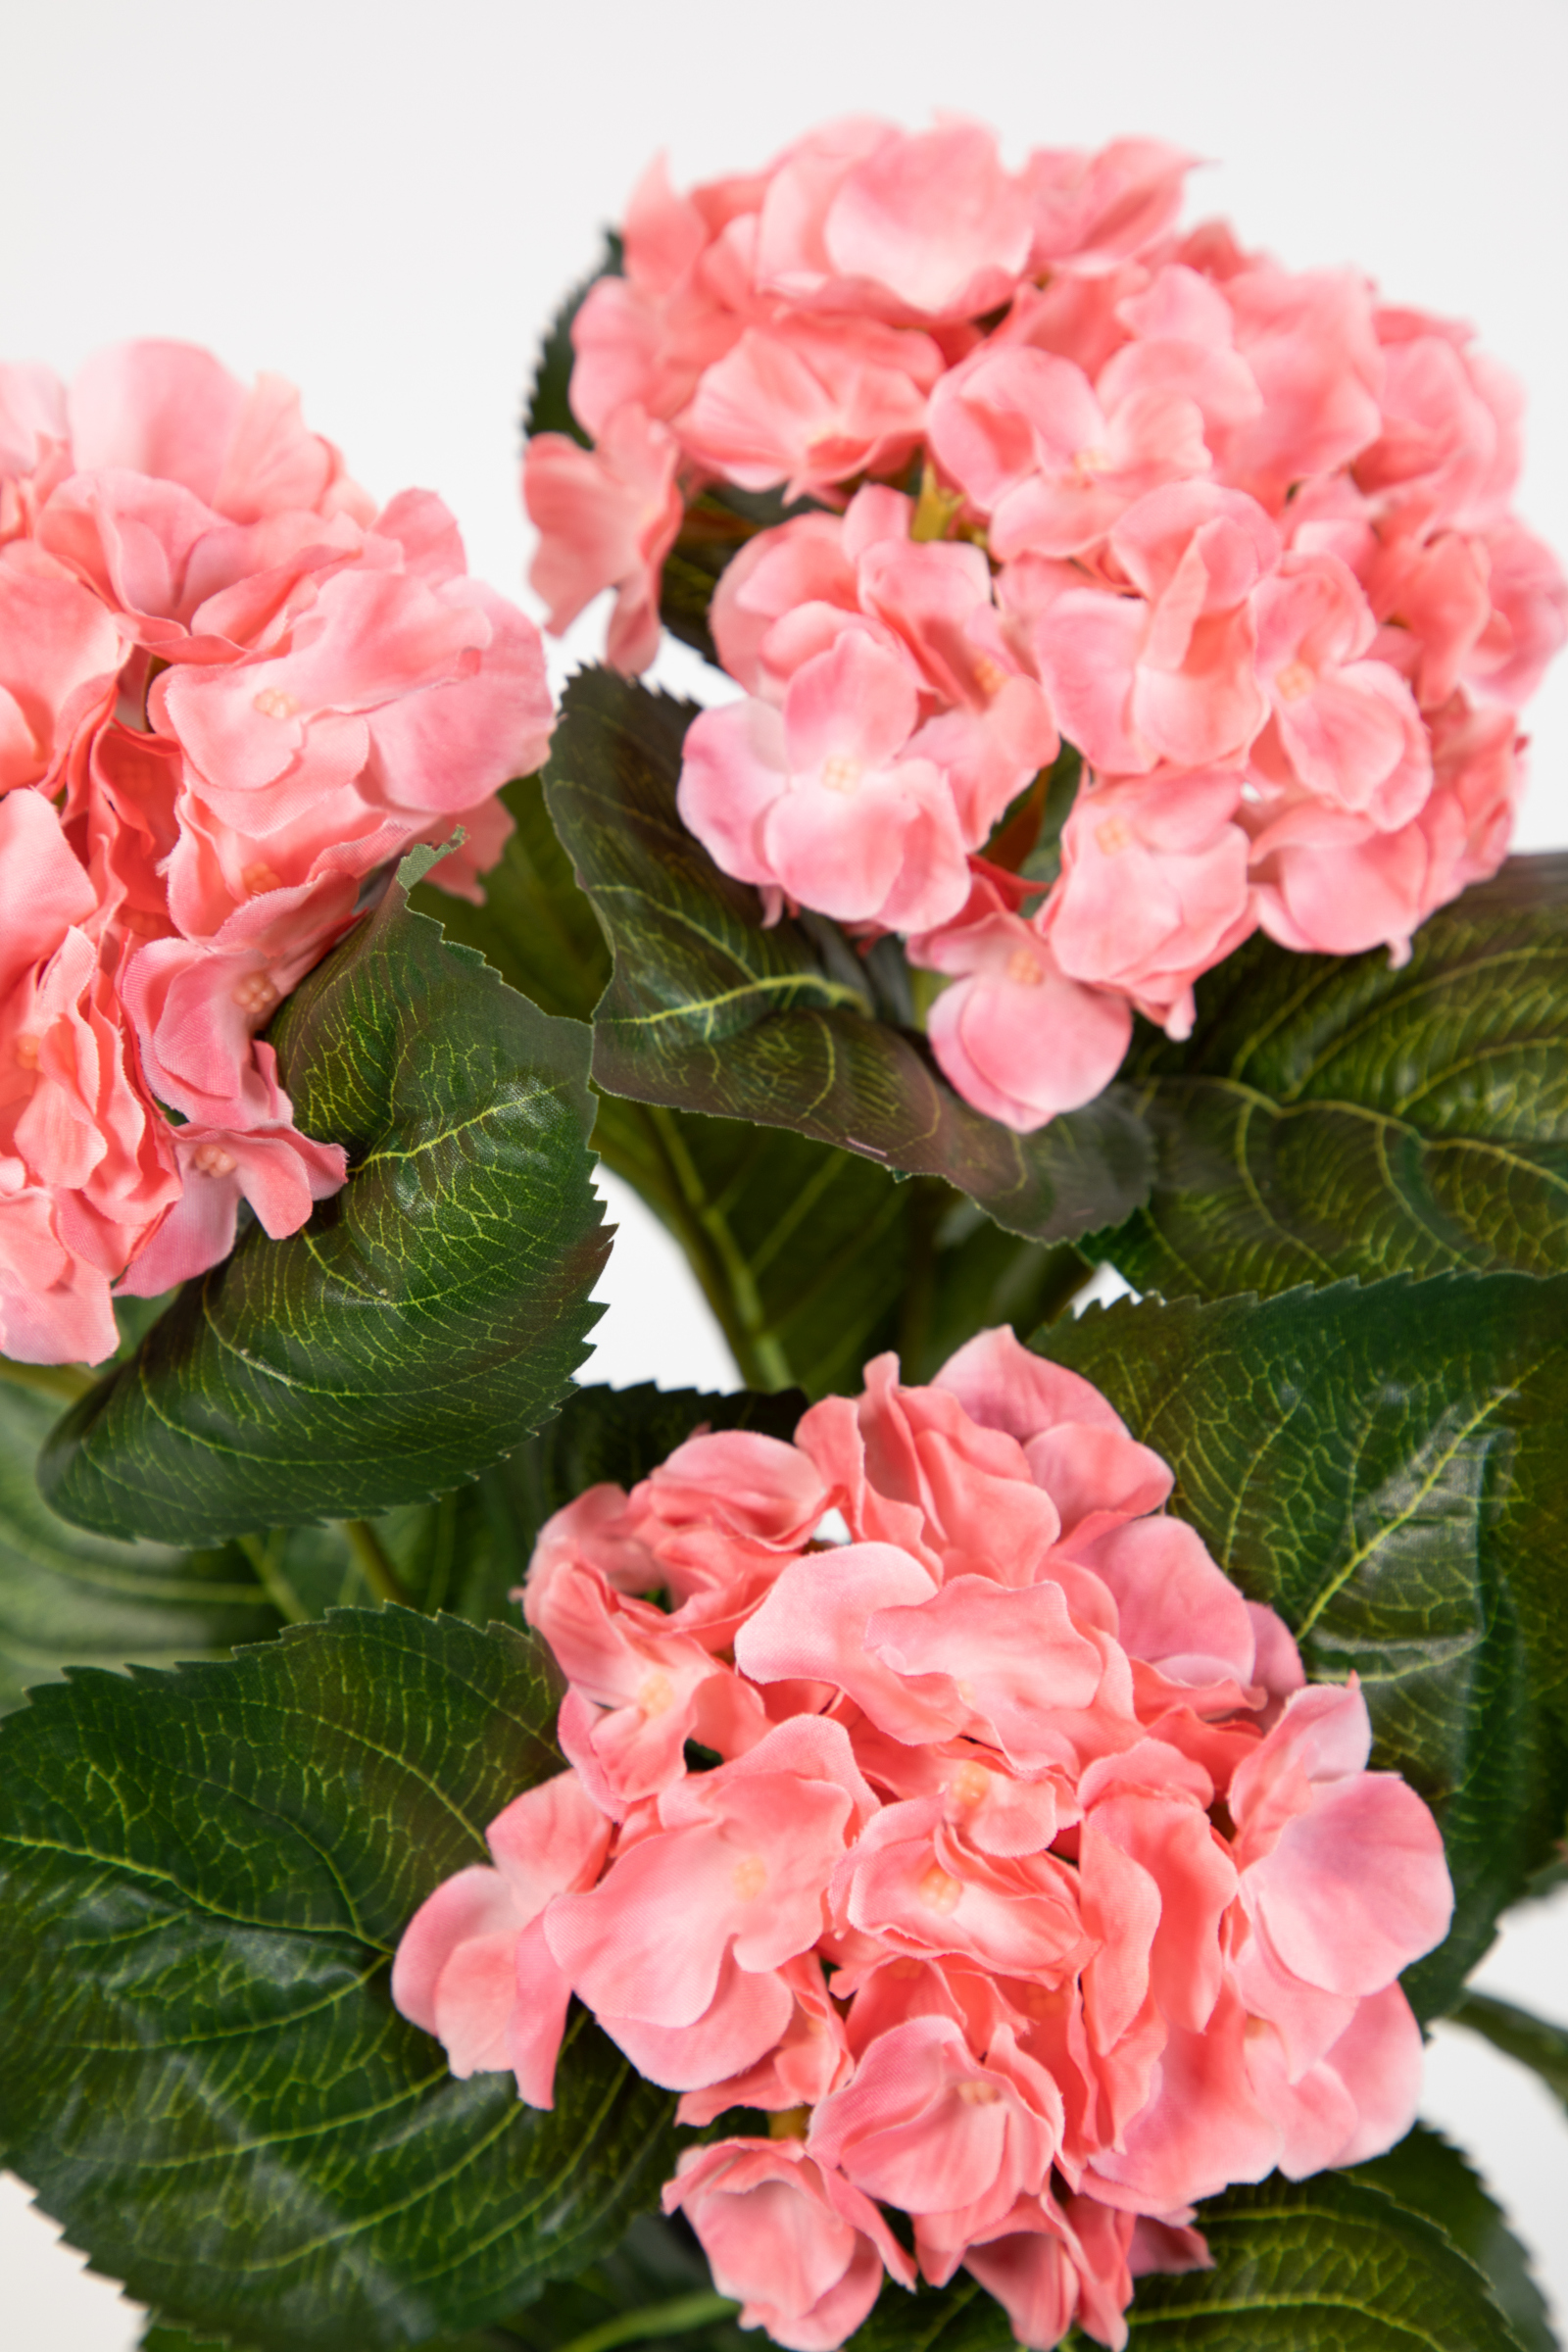 Hortensienbusch Deluxe 42cm rosa-pink im Topf LM Kunstpflanzen künstliche  Hortensie Pflanzen Blumen